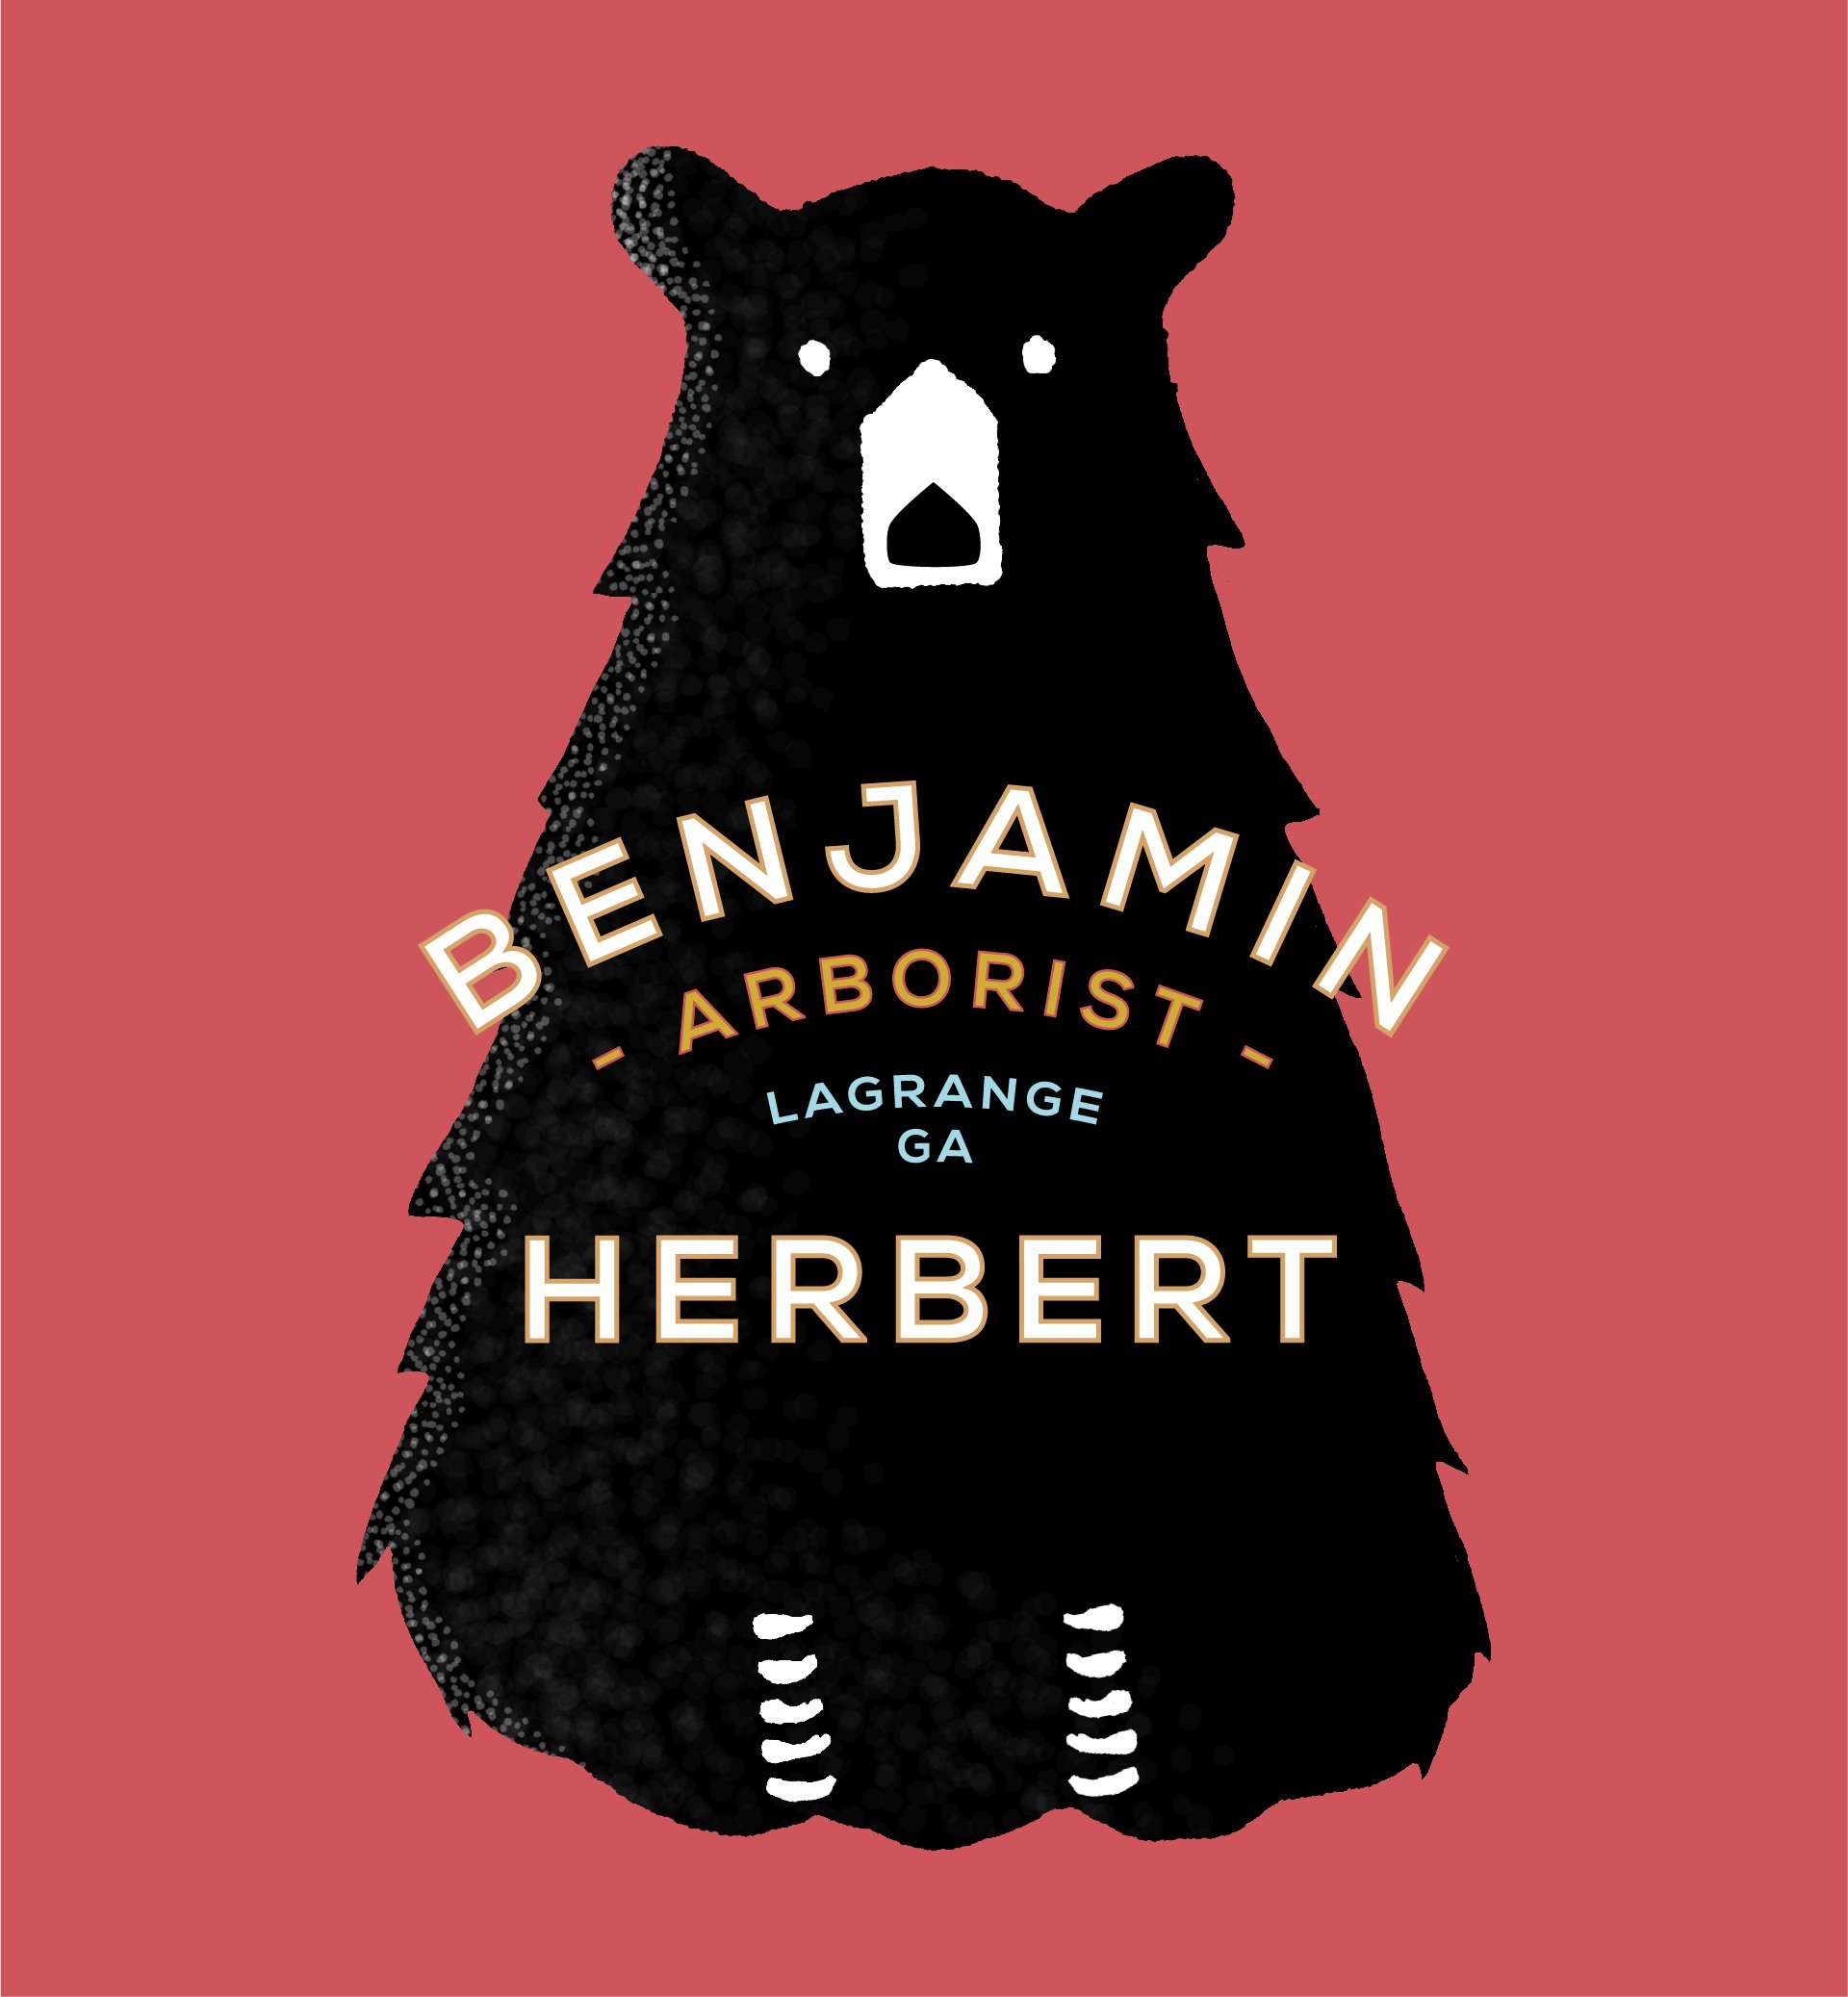 Benjamin Herber Arborist-logo-red square.jpg